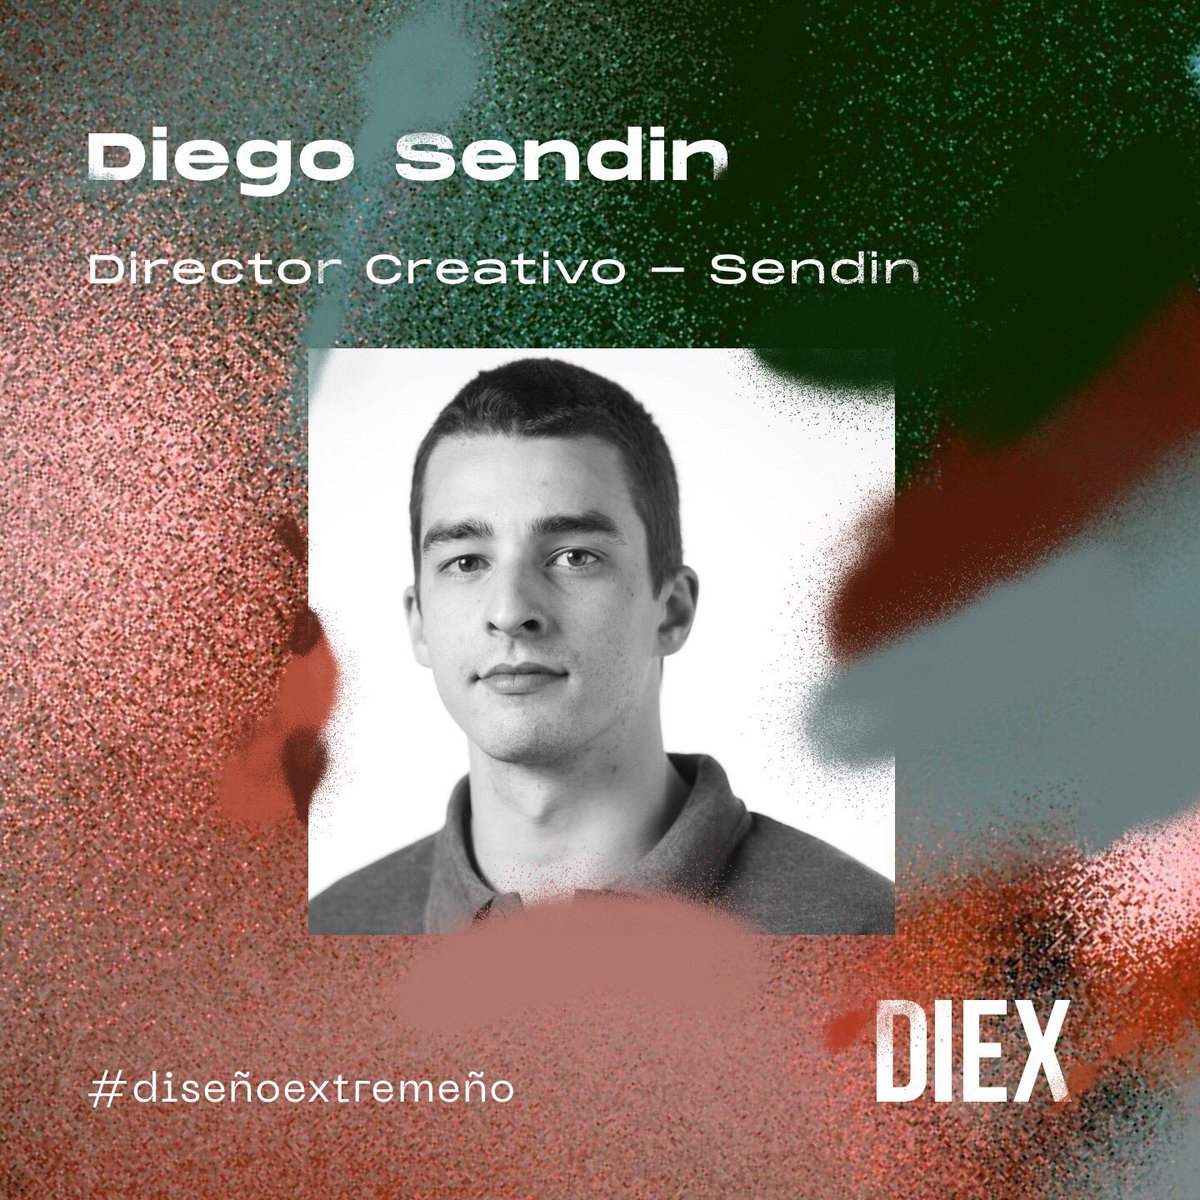 NO TE LO PIERDAS!!! Jueves - 18.30 h. DIEX en conversación sobre Comunicación #diseñoextremeño Nuestros invitados: @belen_chuty directora de arte de @whatsapp (NYC) @IsmaelBarros, CEO y cofundador de @solublestudio (BCN) @Habla_Diego Director creativo de Sendín design (MAD)